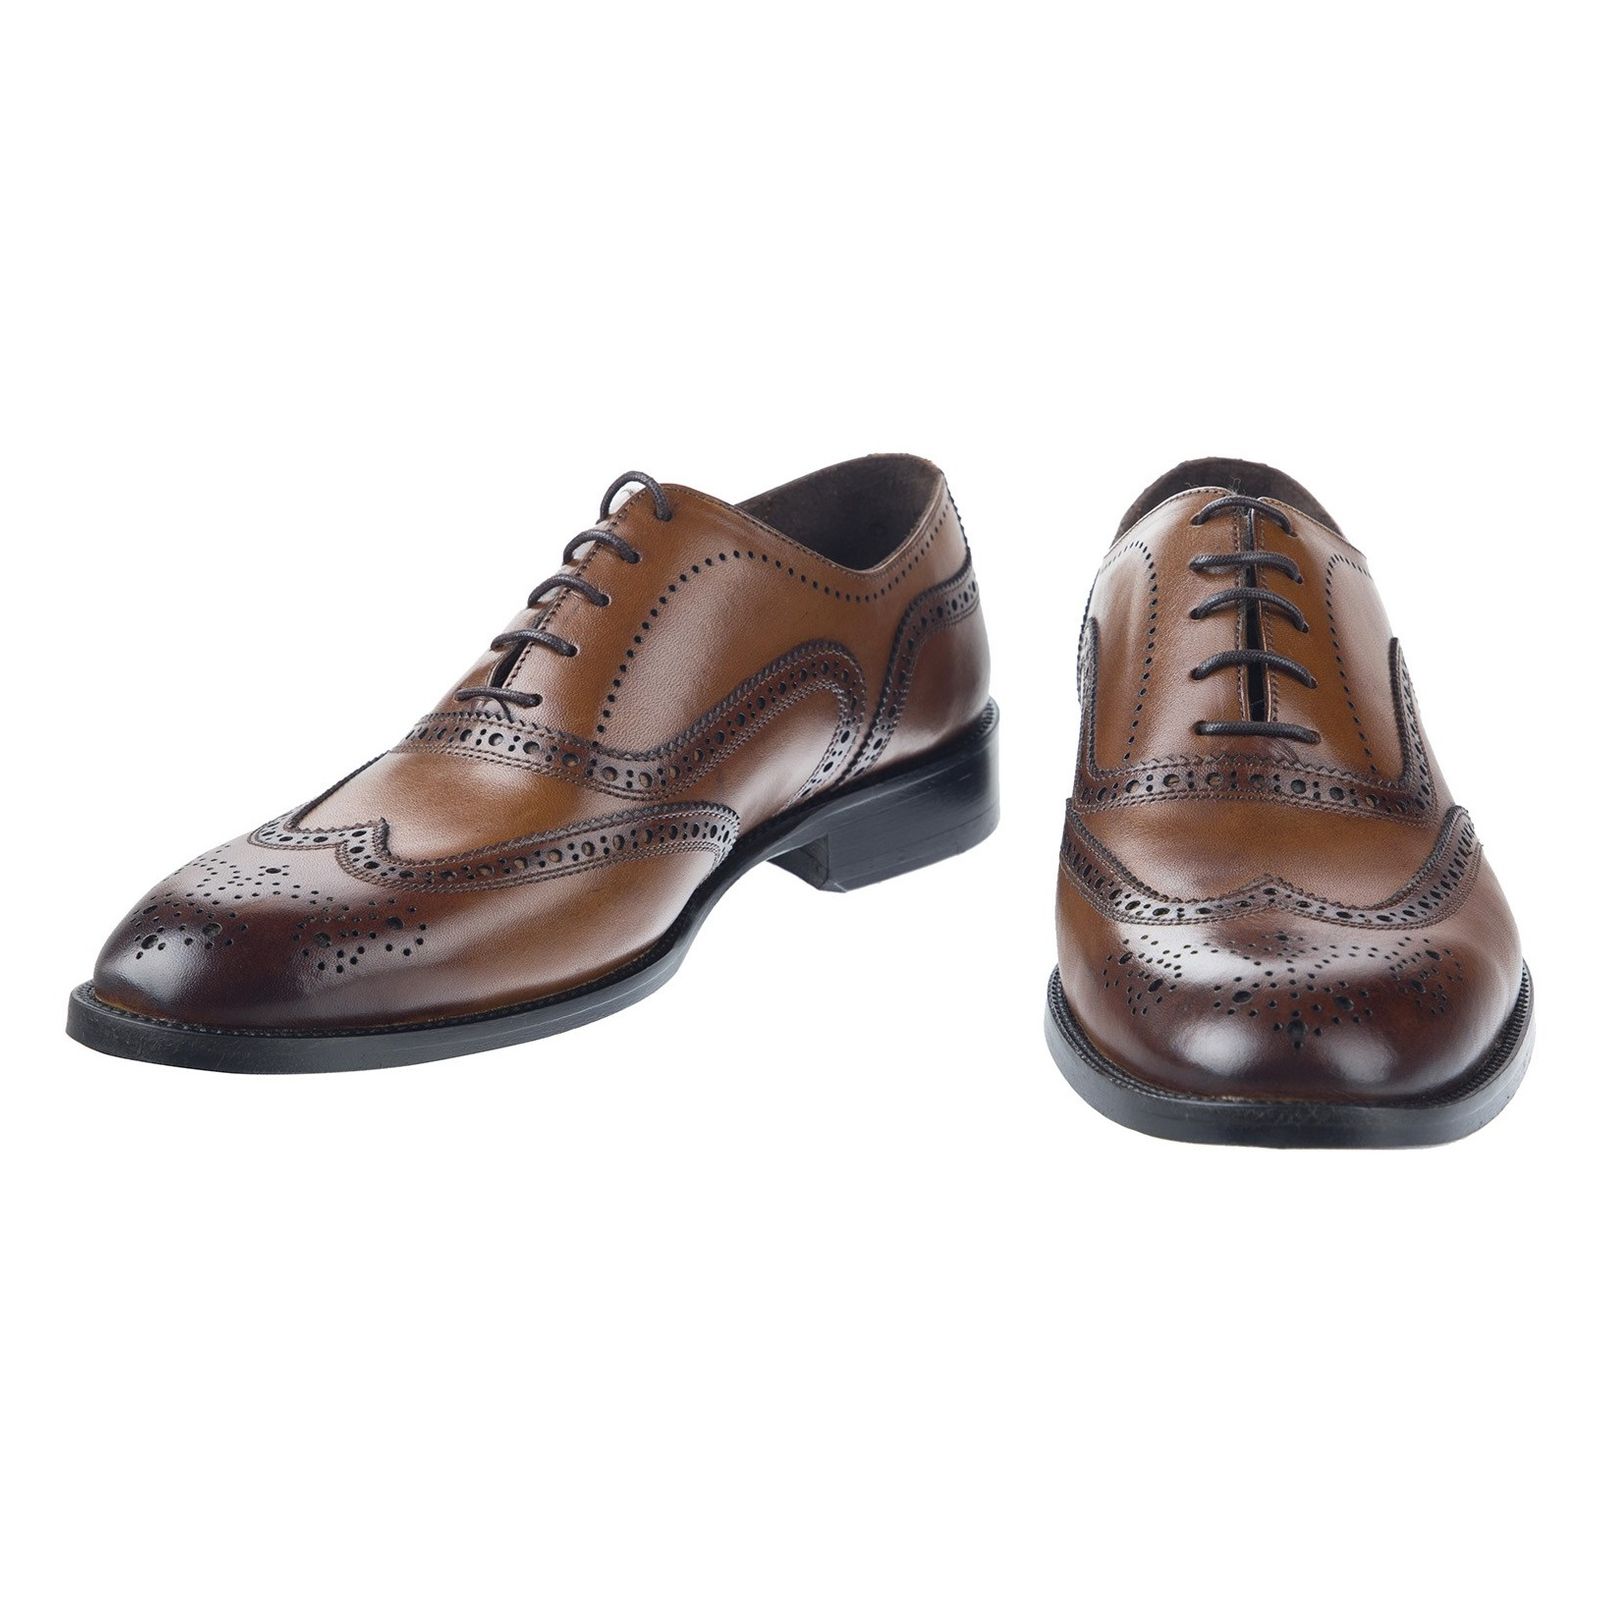 کفش چرم رسمی مردانه - درسا - Brown - 3